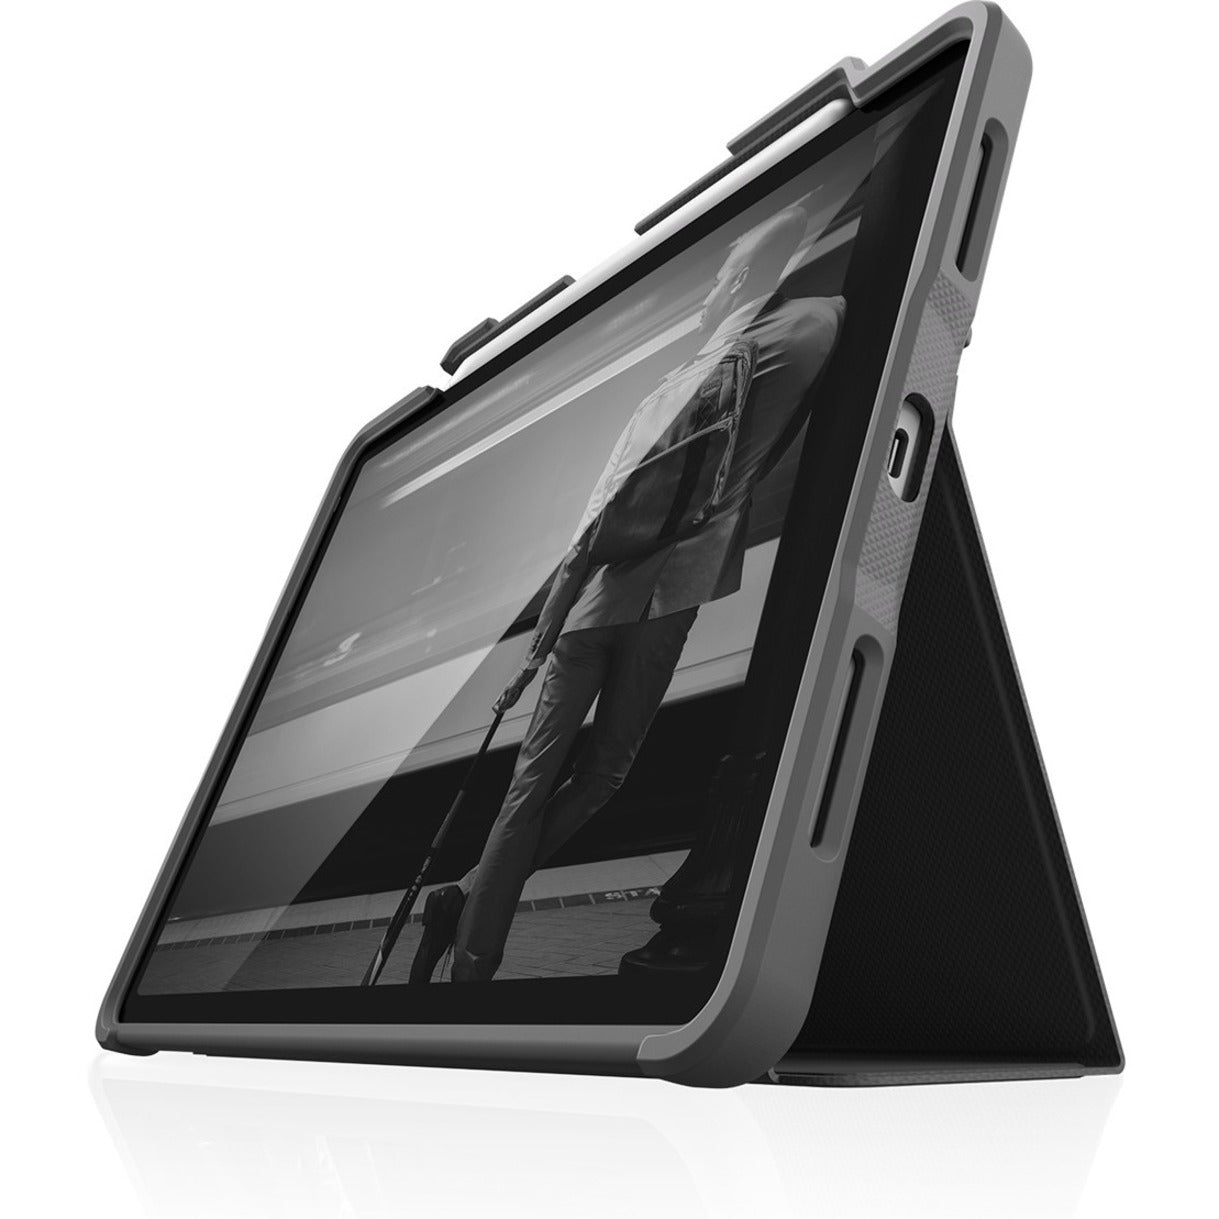 STM Goods STM-222-334KZ-01 DUX PLUS iPad Pro Modelle mit Apple Pencil Aufbewahrung (2021) Schwarz 11"